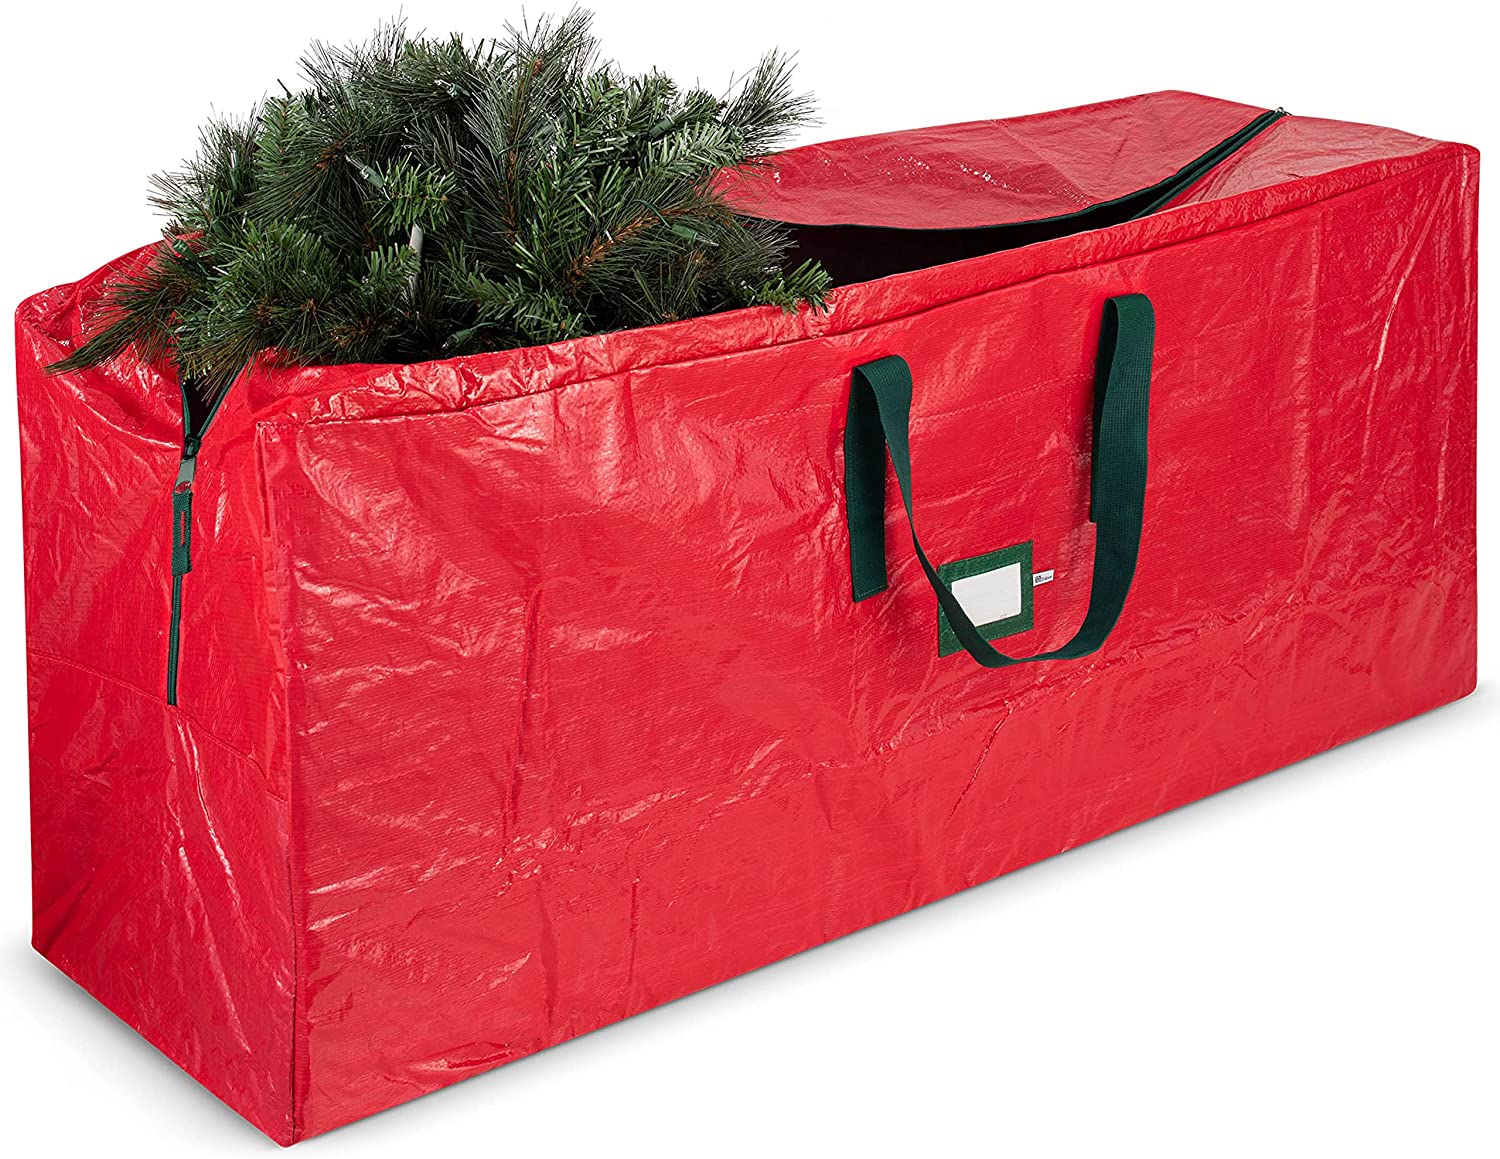  7. ZOBER Christmas Tree Storage Bags 